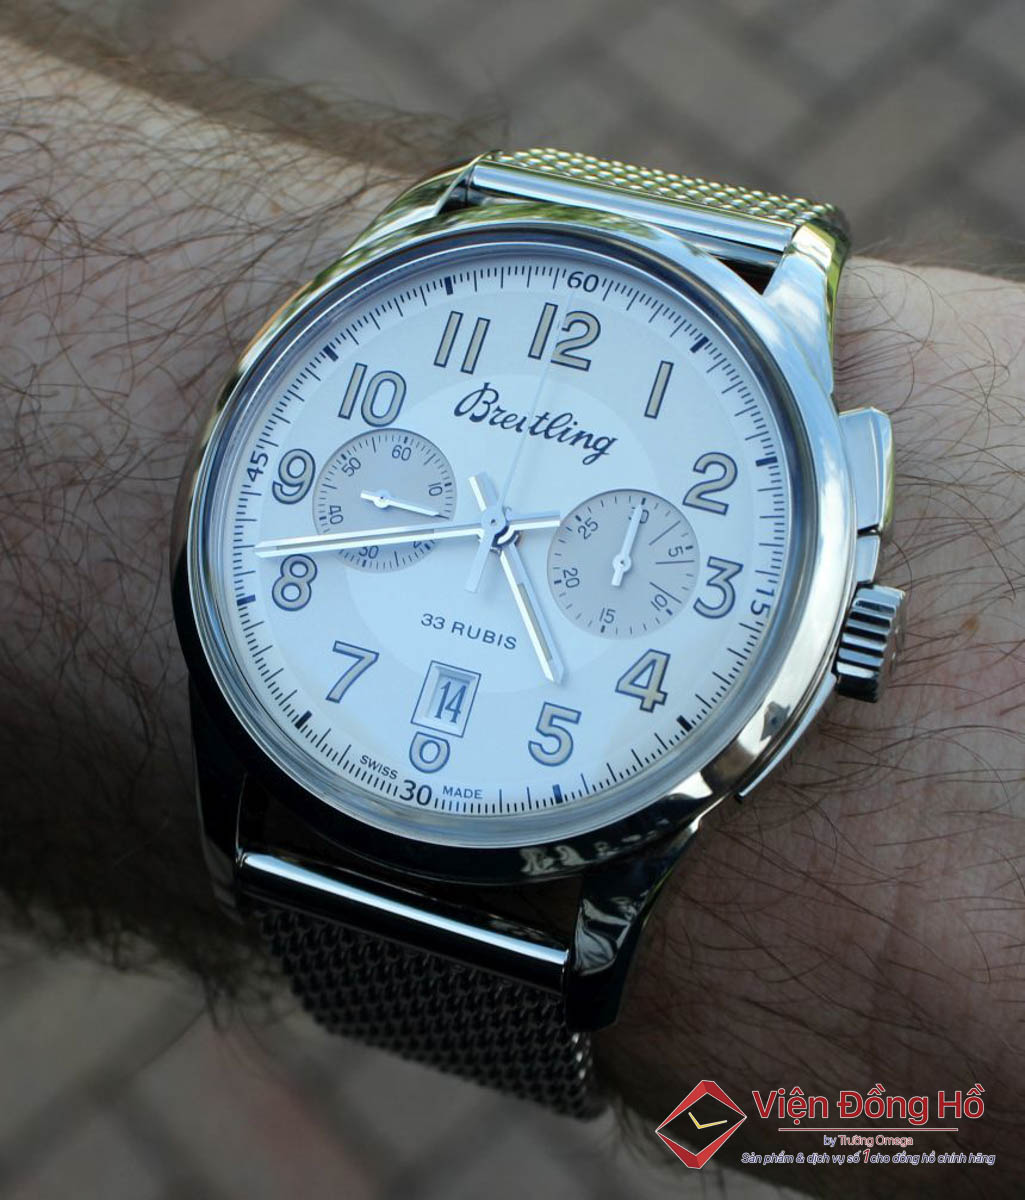 Breitling đã phát hành đồng hồ bấm giờ đồng hồ đeo tay đầu tiên với một nút bấm riêng biệt